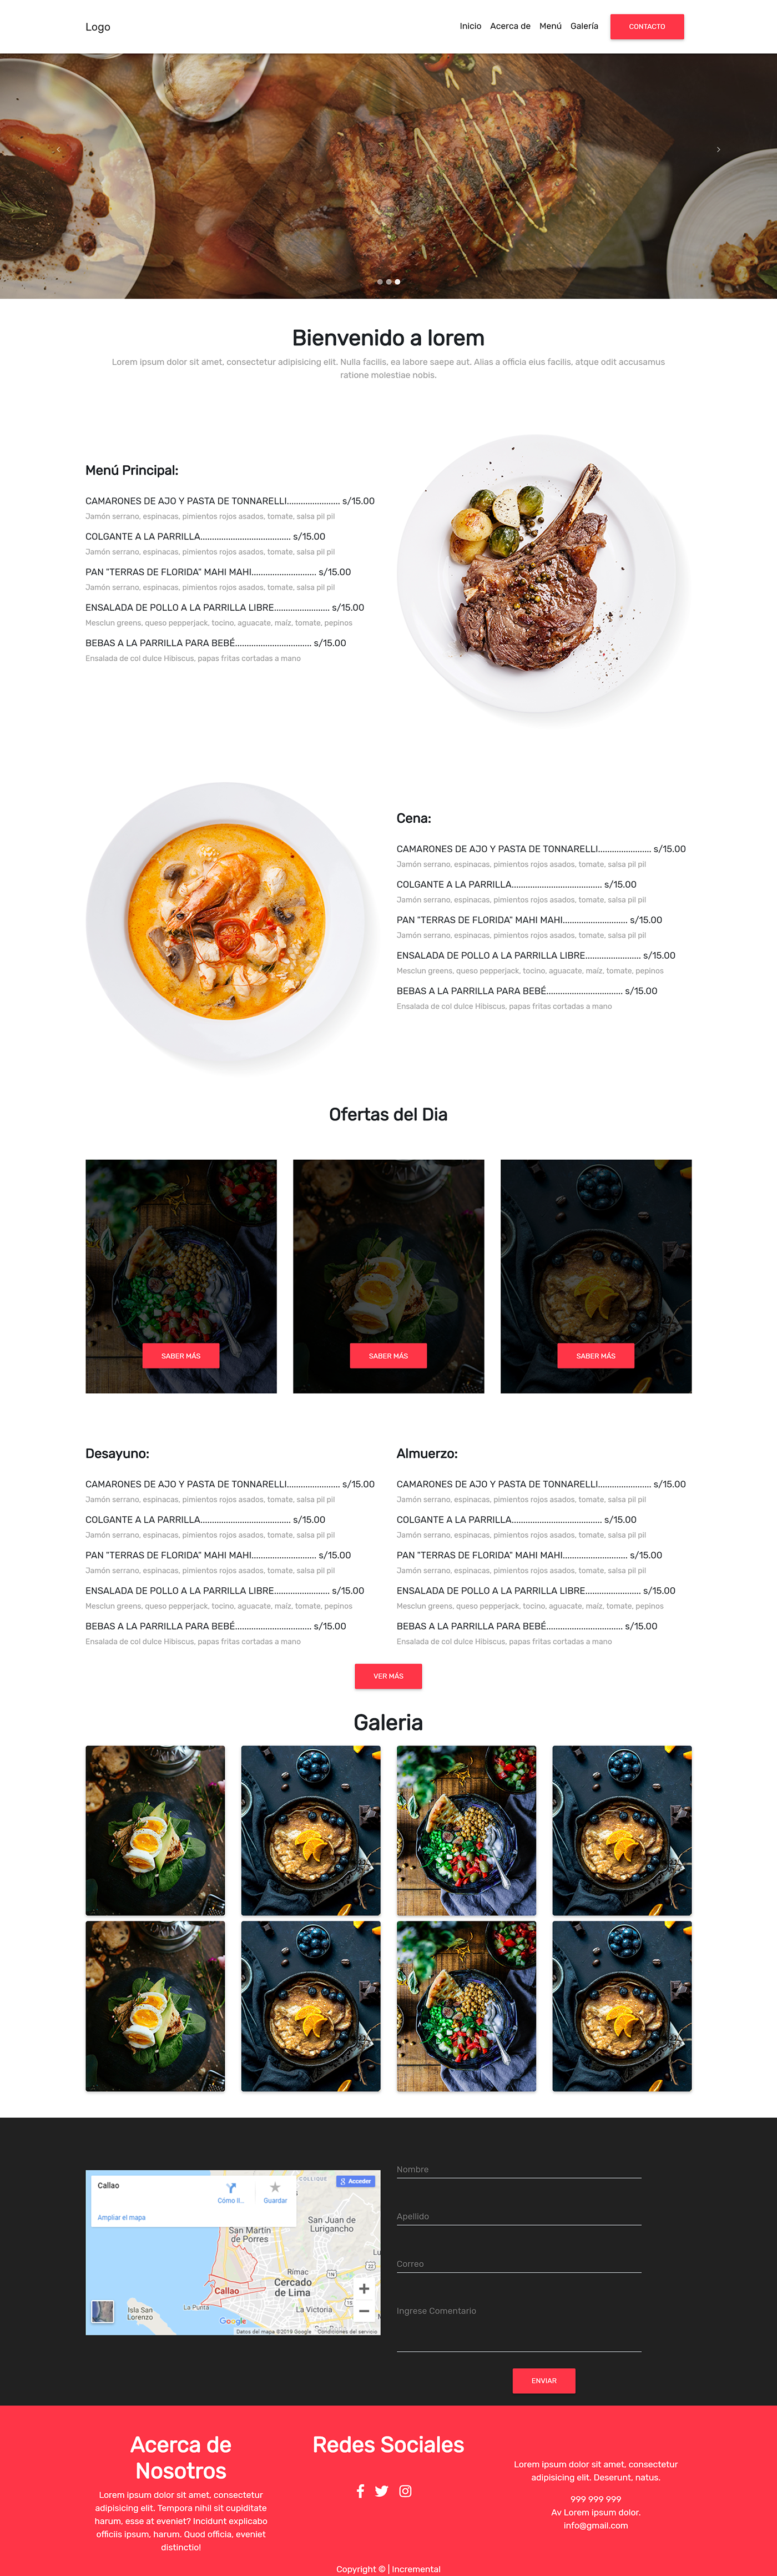 Diseño web Paginas web Web paginas programador diseñador grafico diseñador restaurante